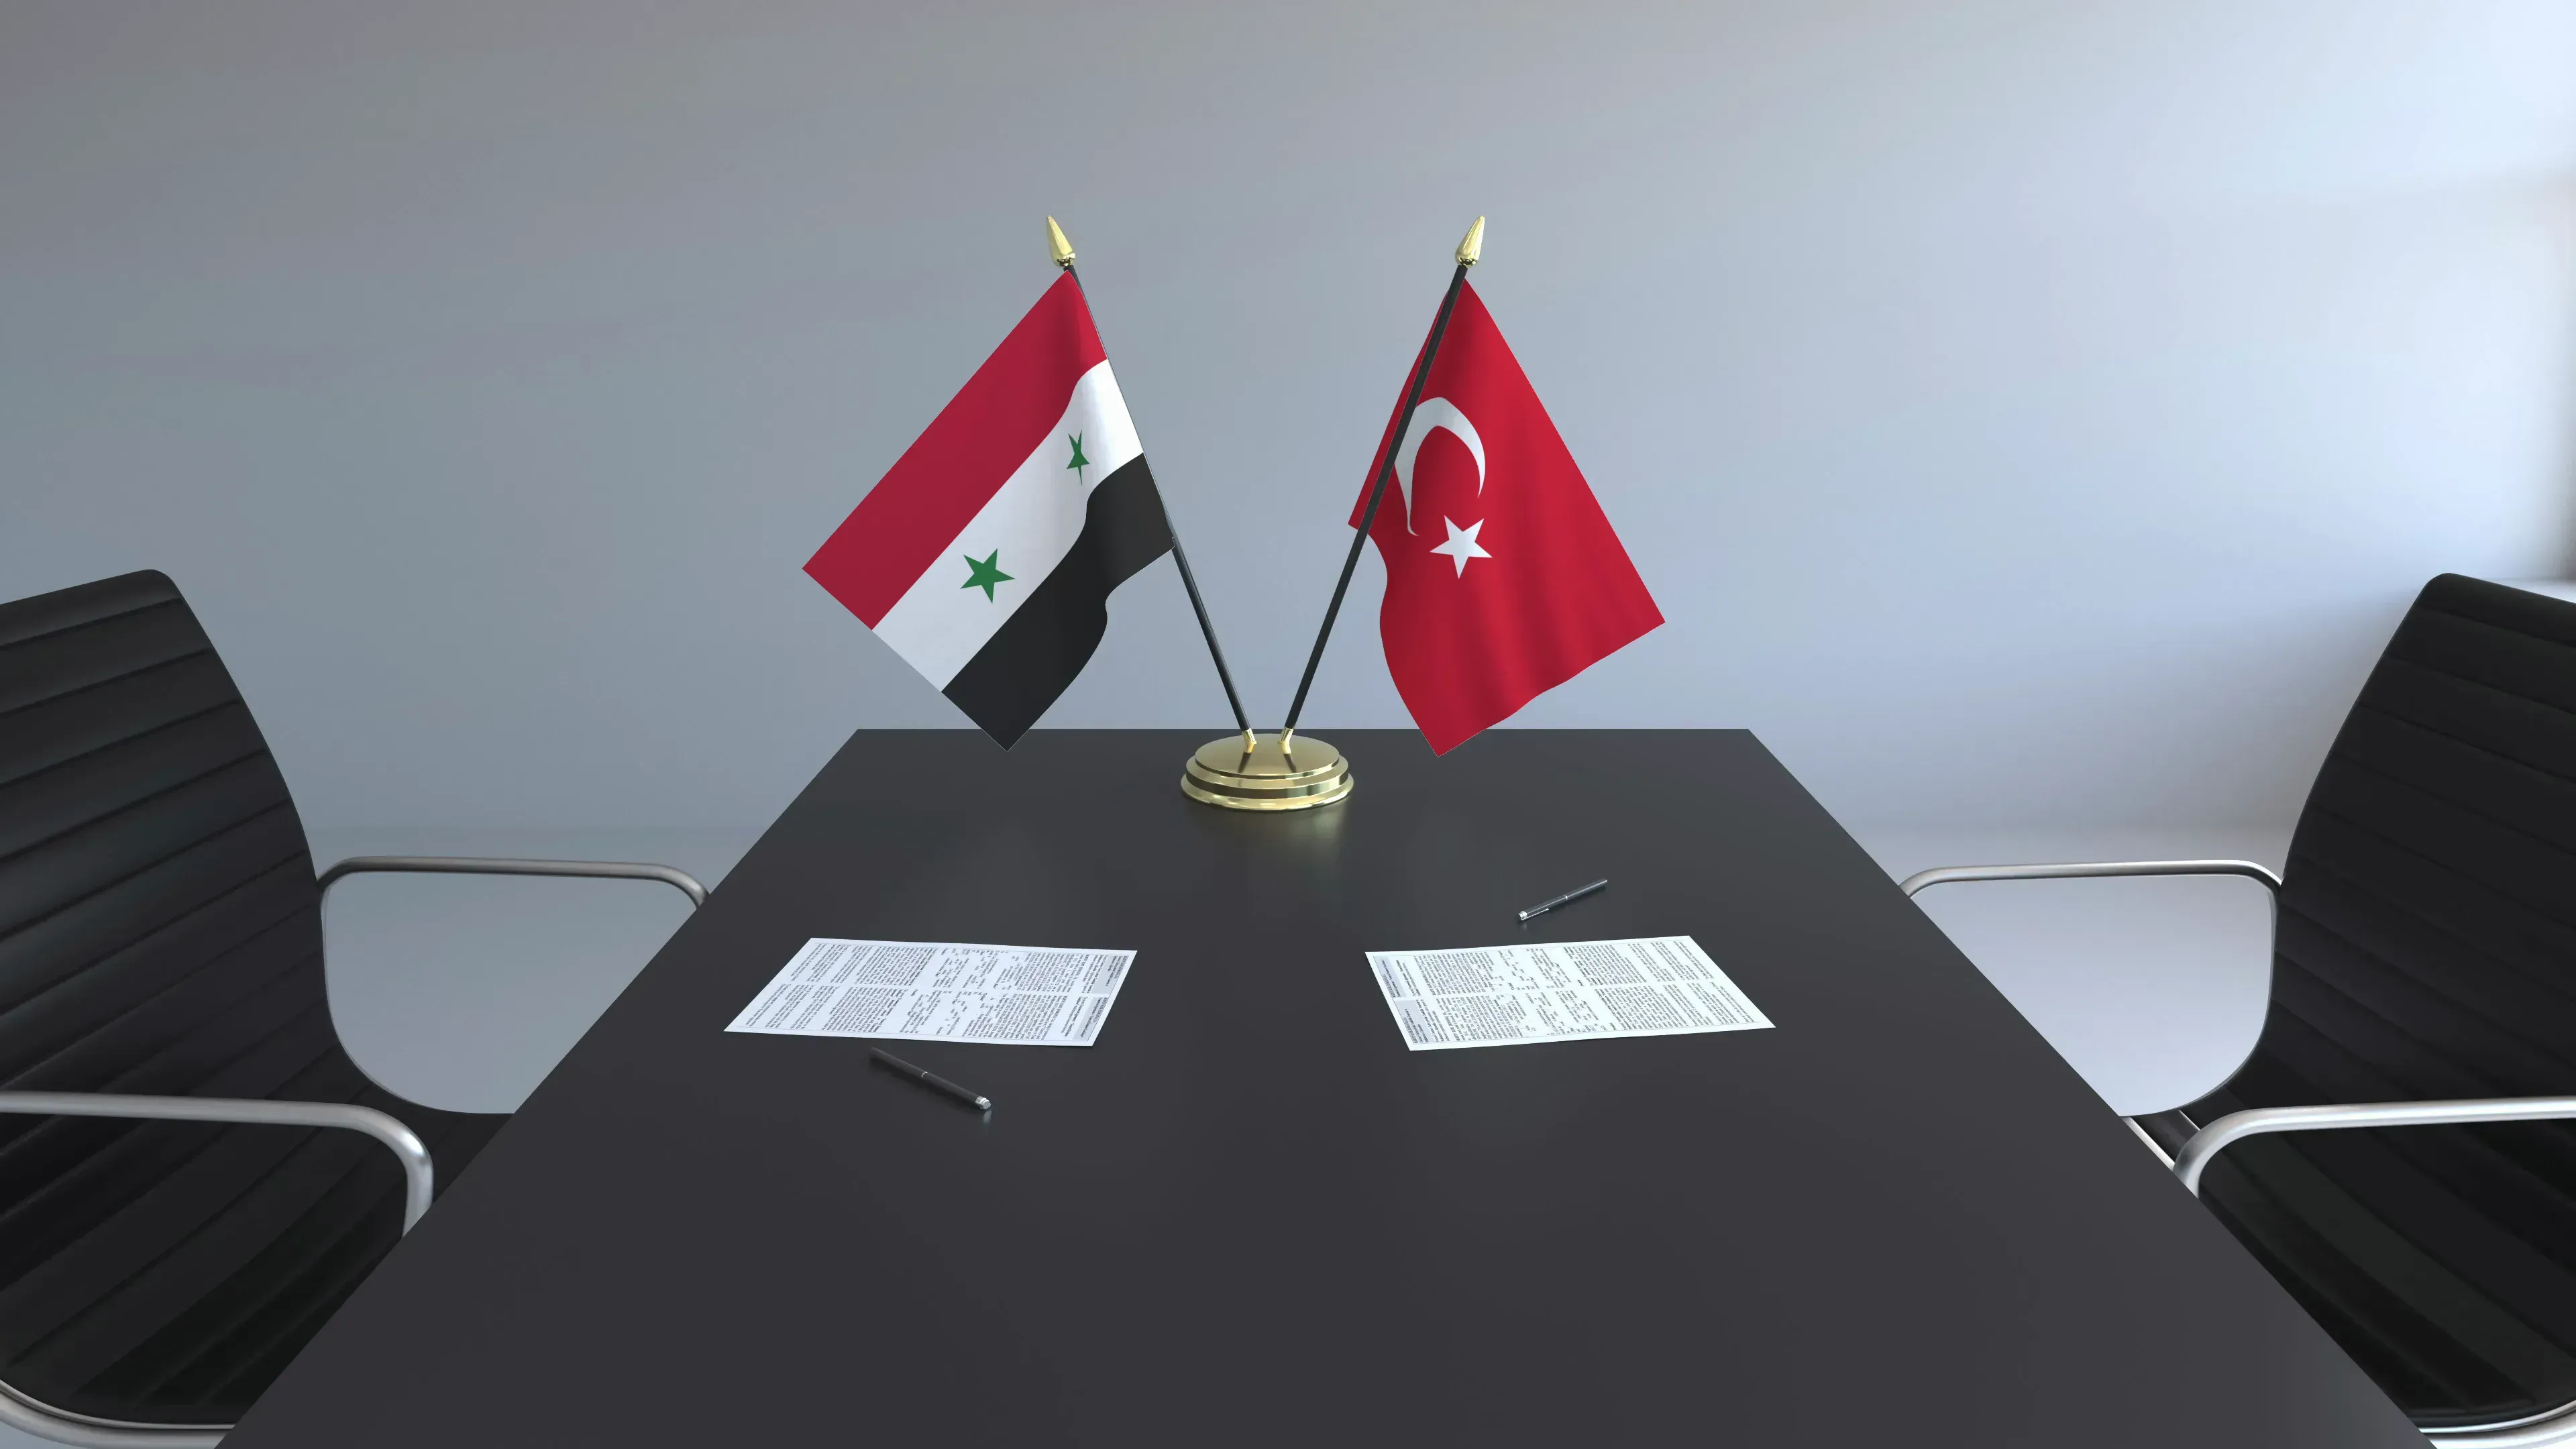 مركز دراسات: الاعتبارات التي دفعت "تركيا وسوريا" للتقارب تغيرت بعد الزلزال